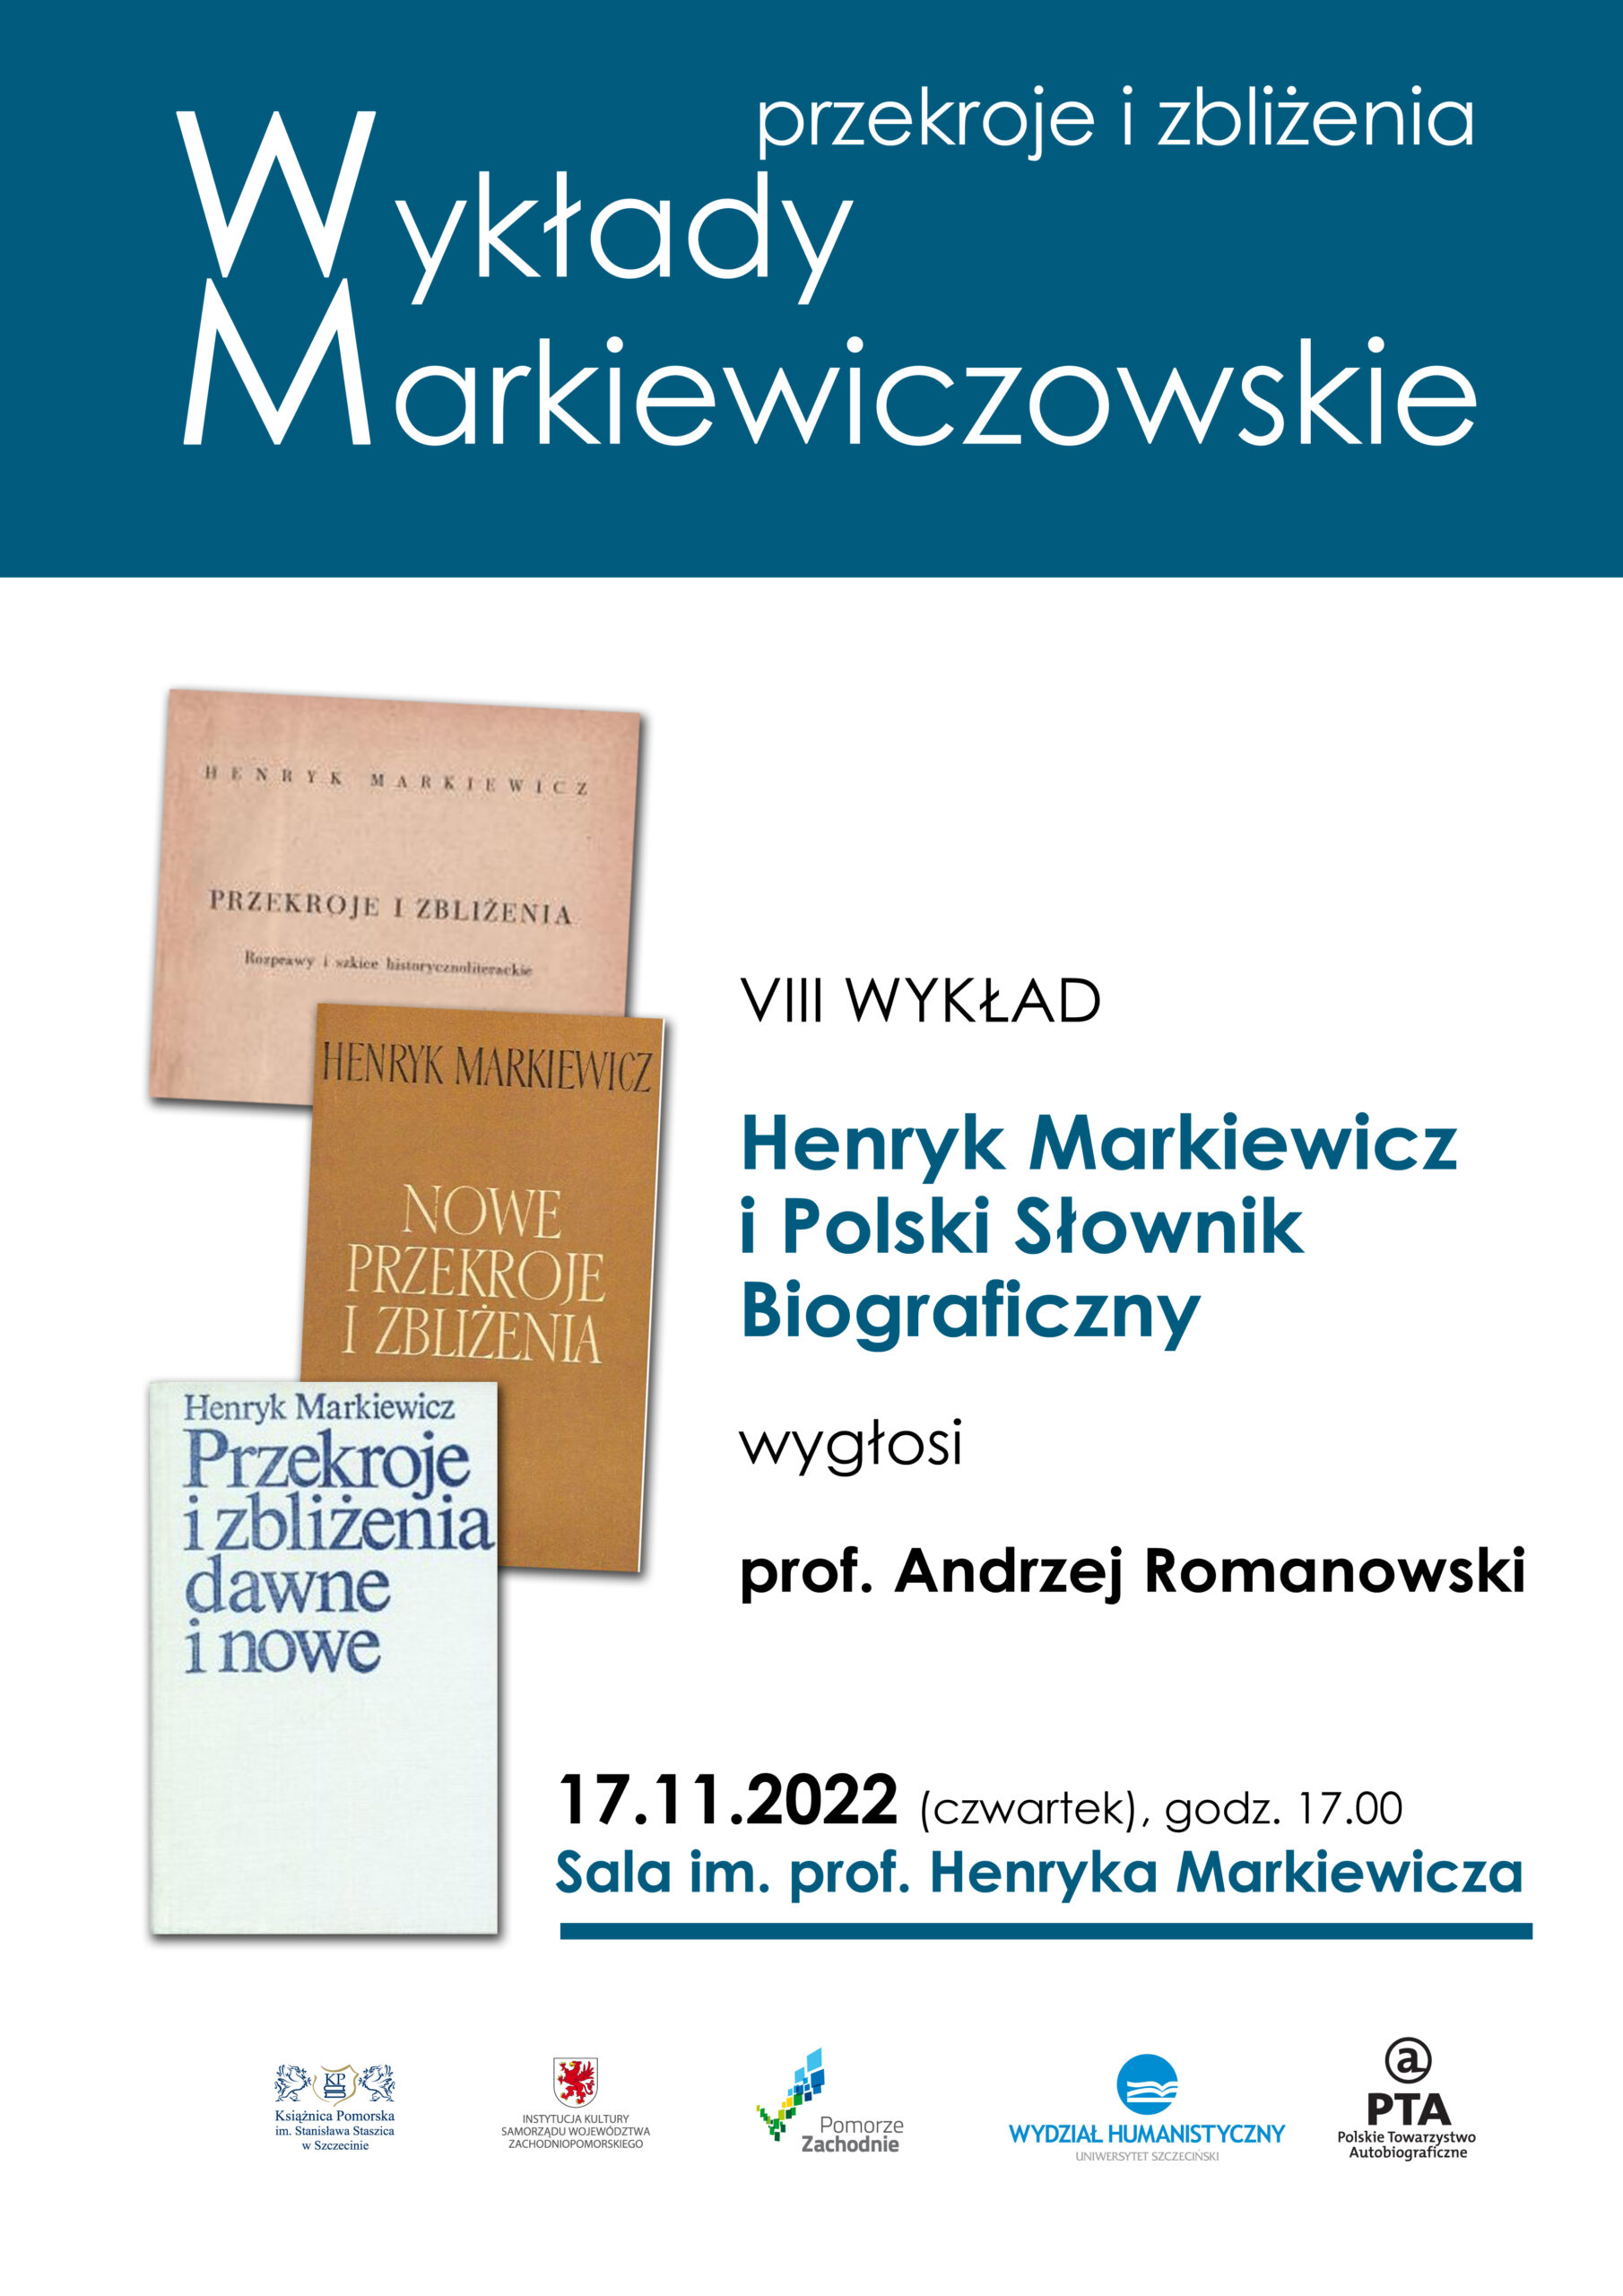 Przekroje i zbliżenia. Wykłady Markiewiczowskie – 17 XI 2022 r.